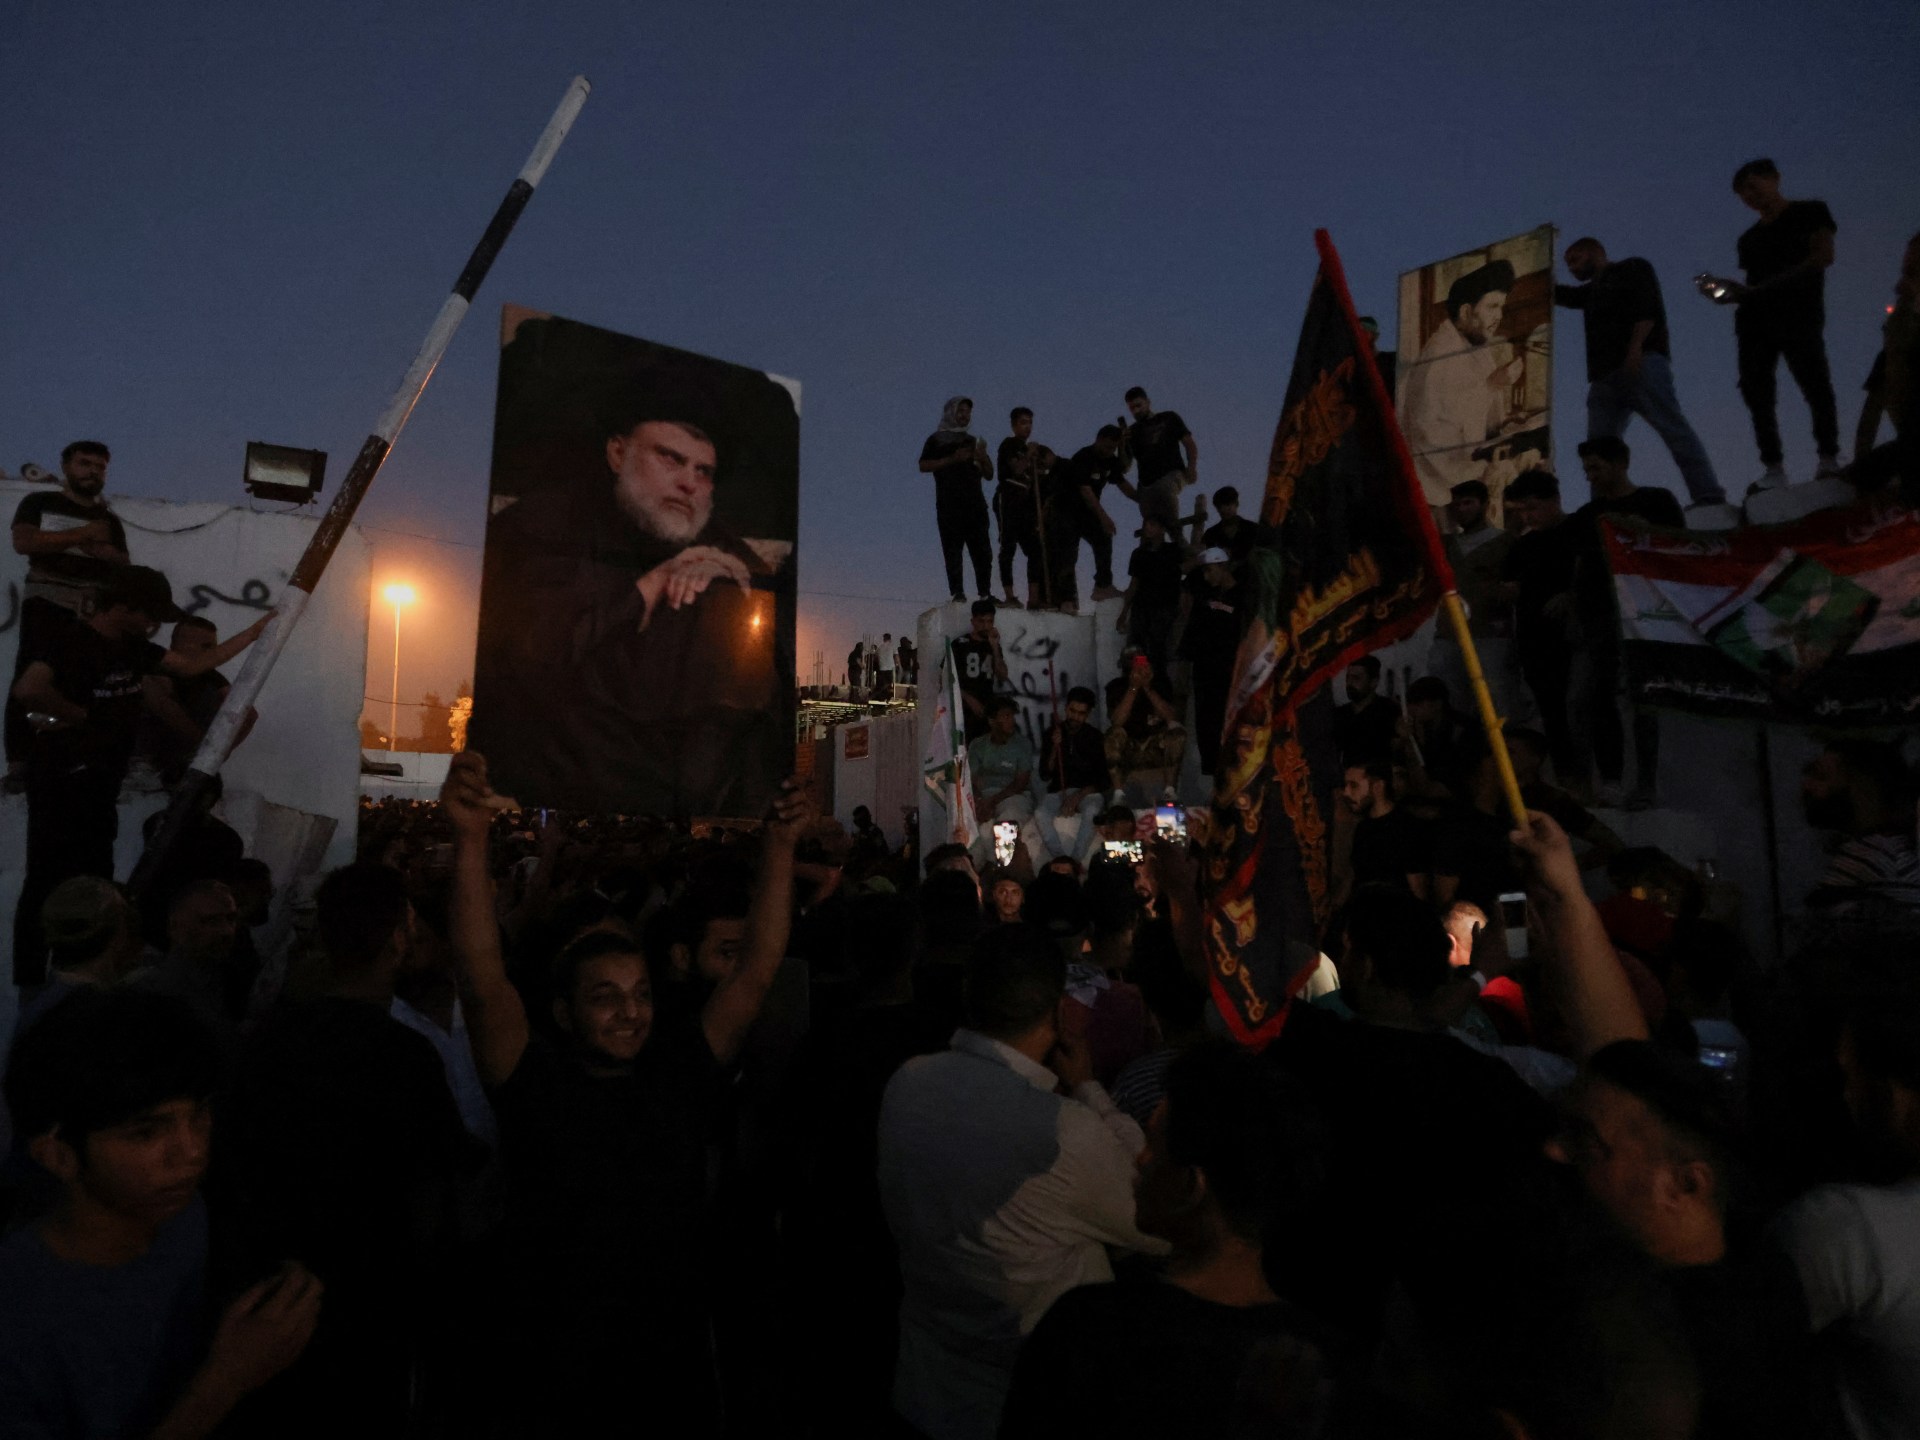 Manifestantes asaltan la Embajada de Suecia en Bagdad para protestar contra la quema del Corán |  noticias islamofobia